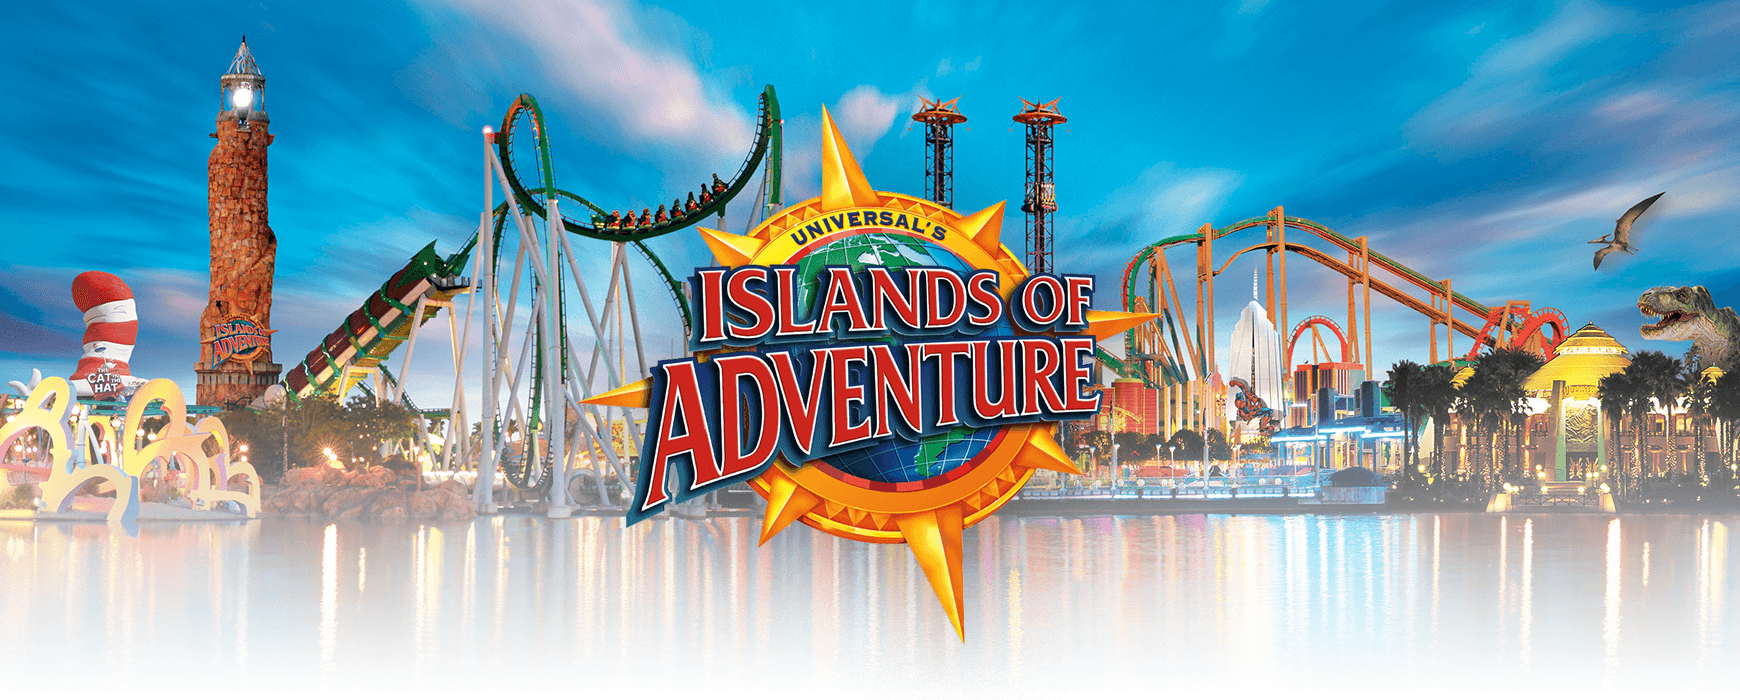 Islands of Adventure Cover - Orlando Vacation